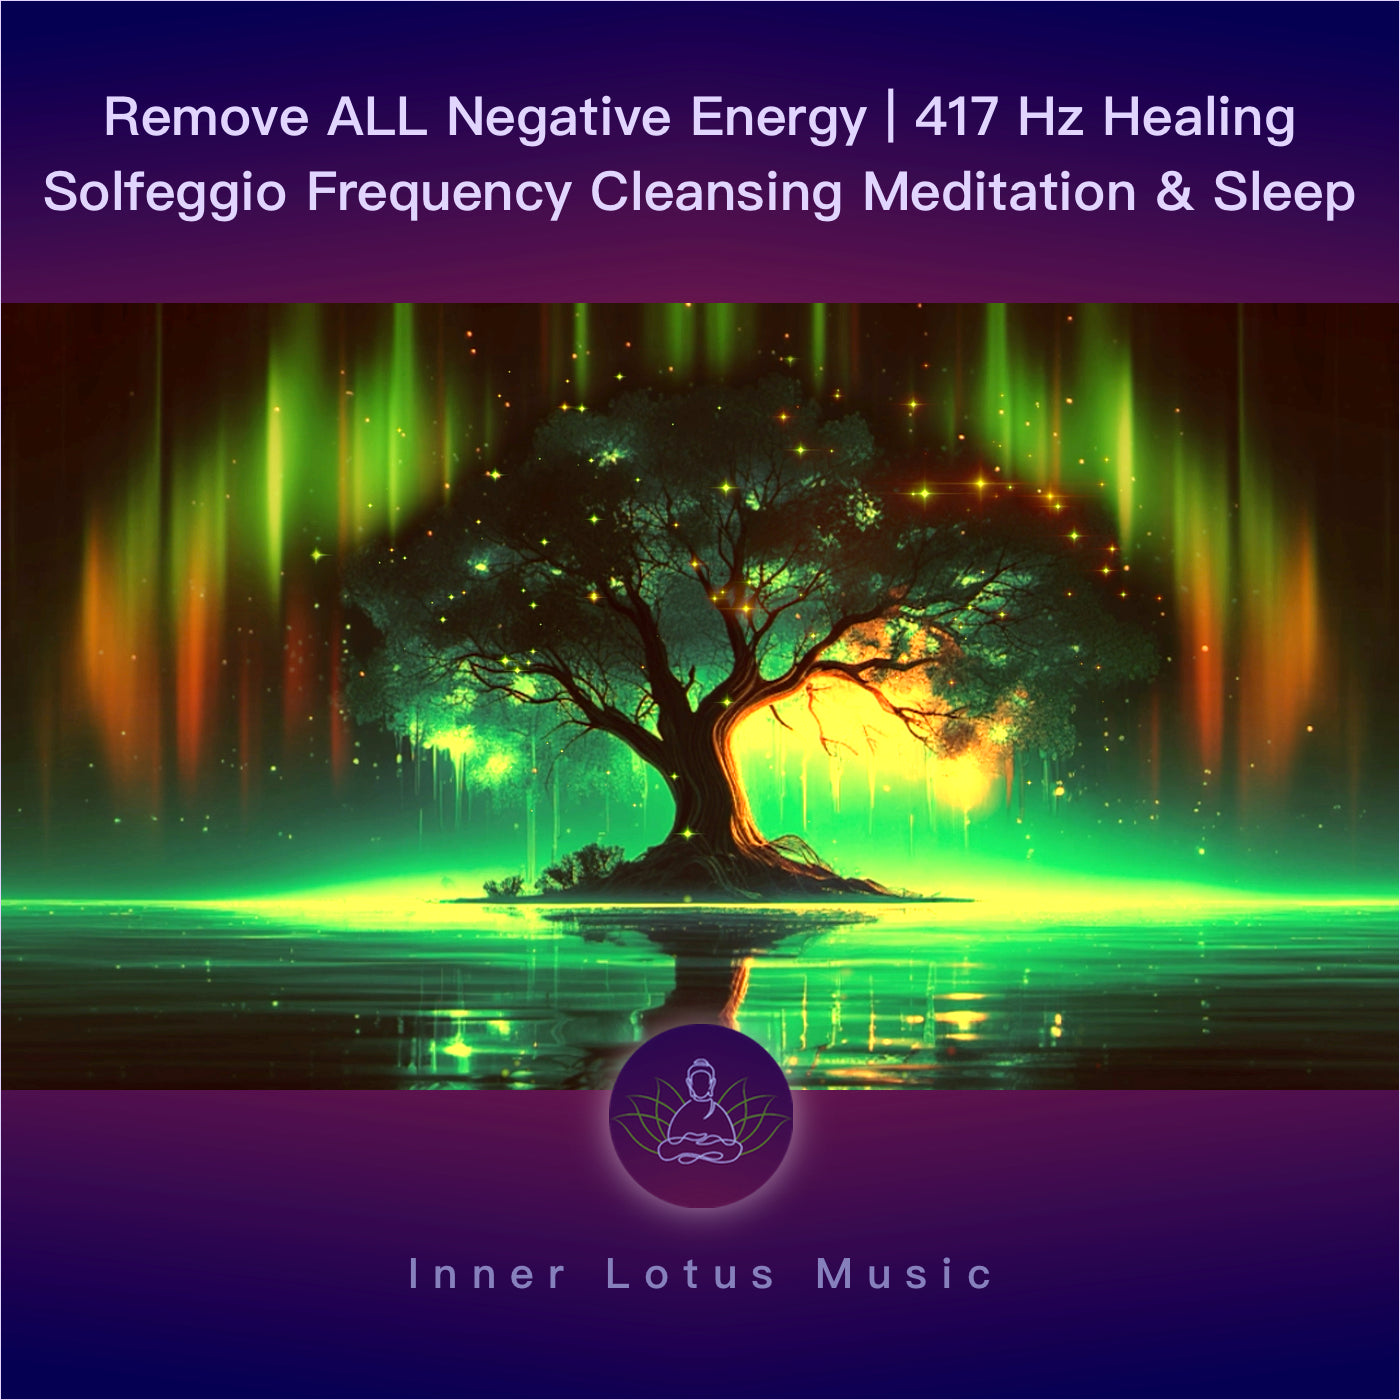 Beseitige ALLE Negative Energie | Heilende 417Hz Solfeggio Frequenz Musik f. Energetische Reinigung